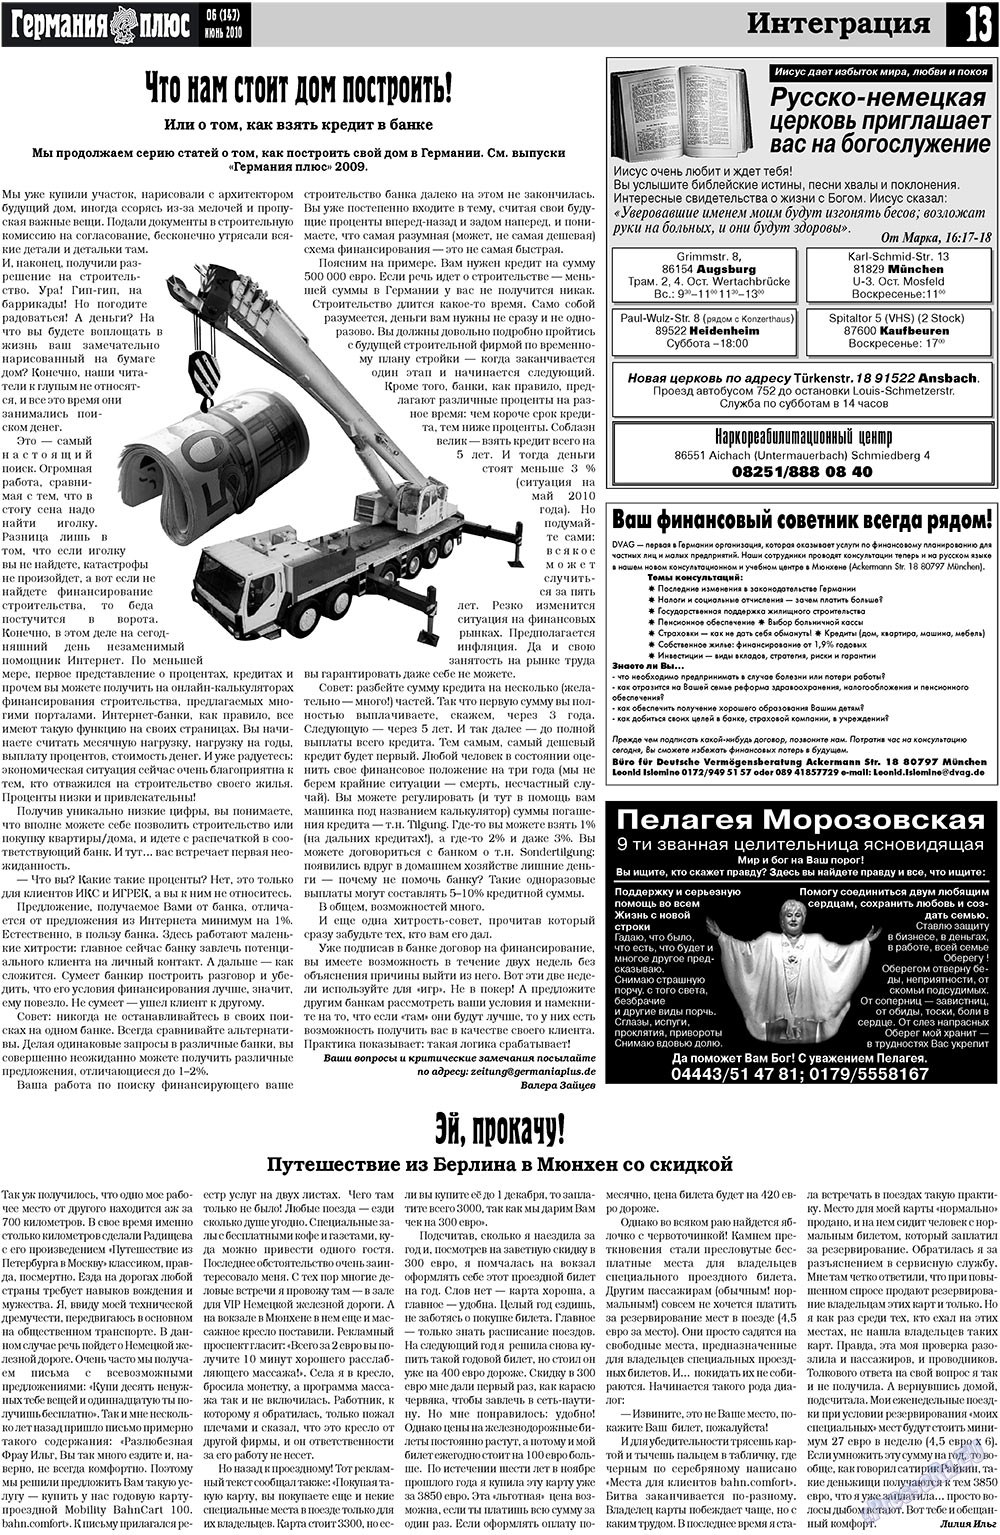 Германия плюс, газета. 2010 №6 стр.13